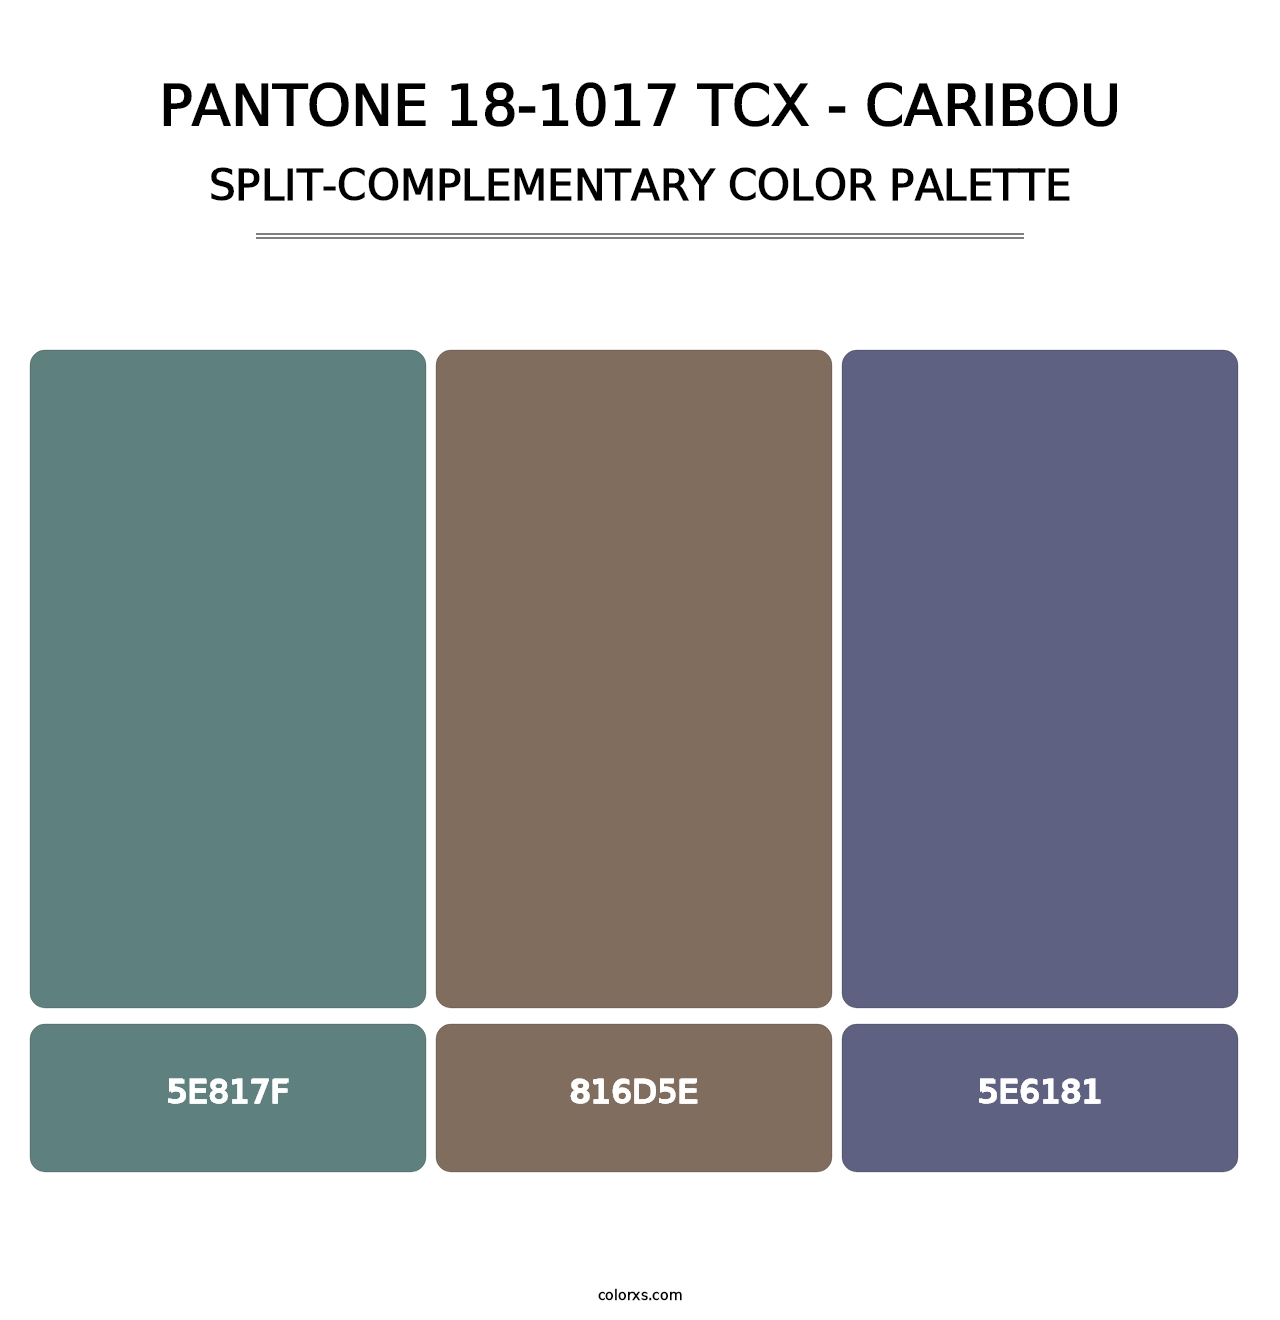 PANTONE 18-1017 TCX - Caribou - Split-Complementary Color Palette